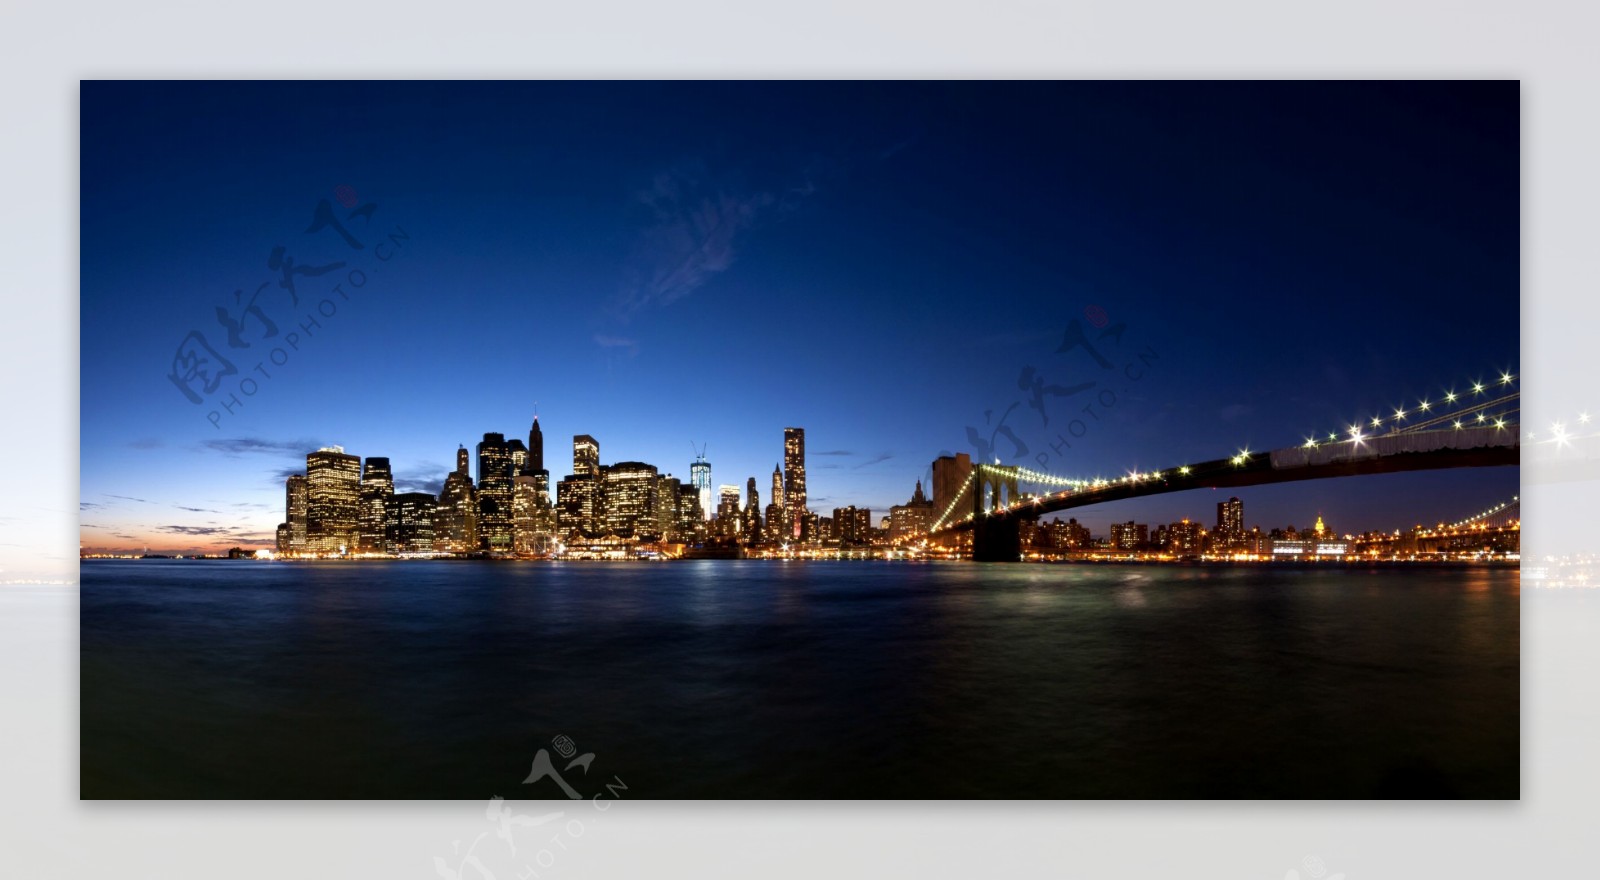 跨海大桥与城市夜景图片